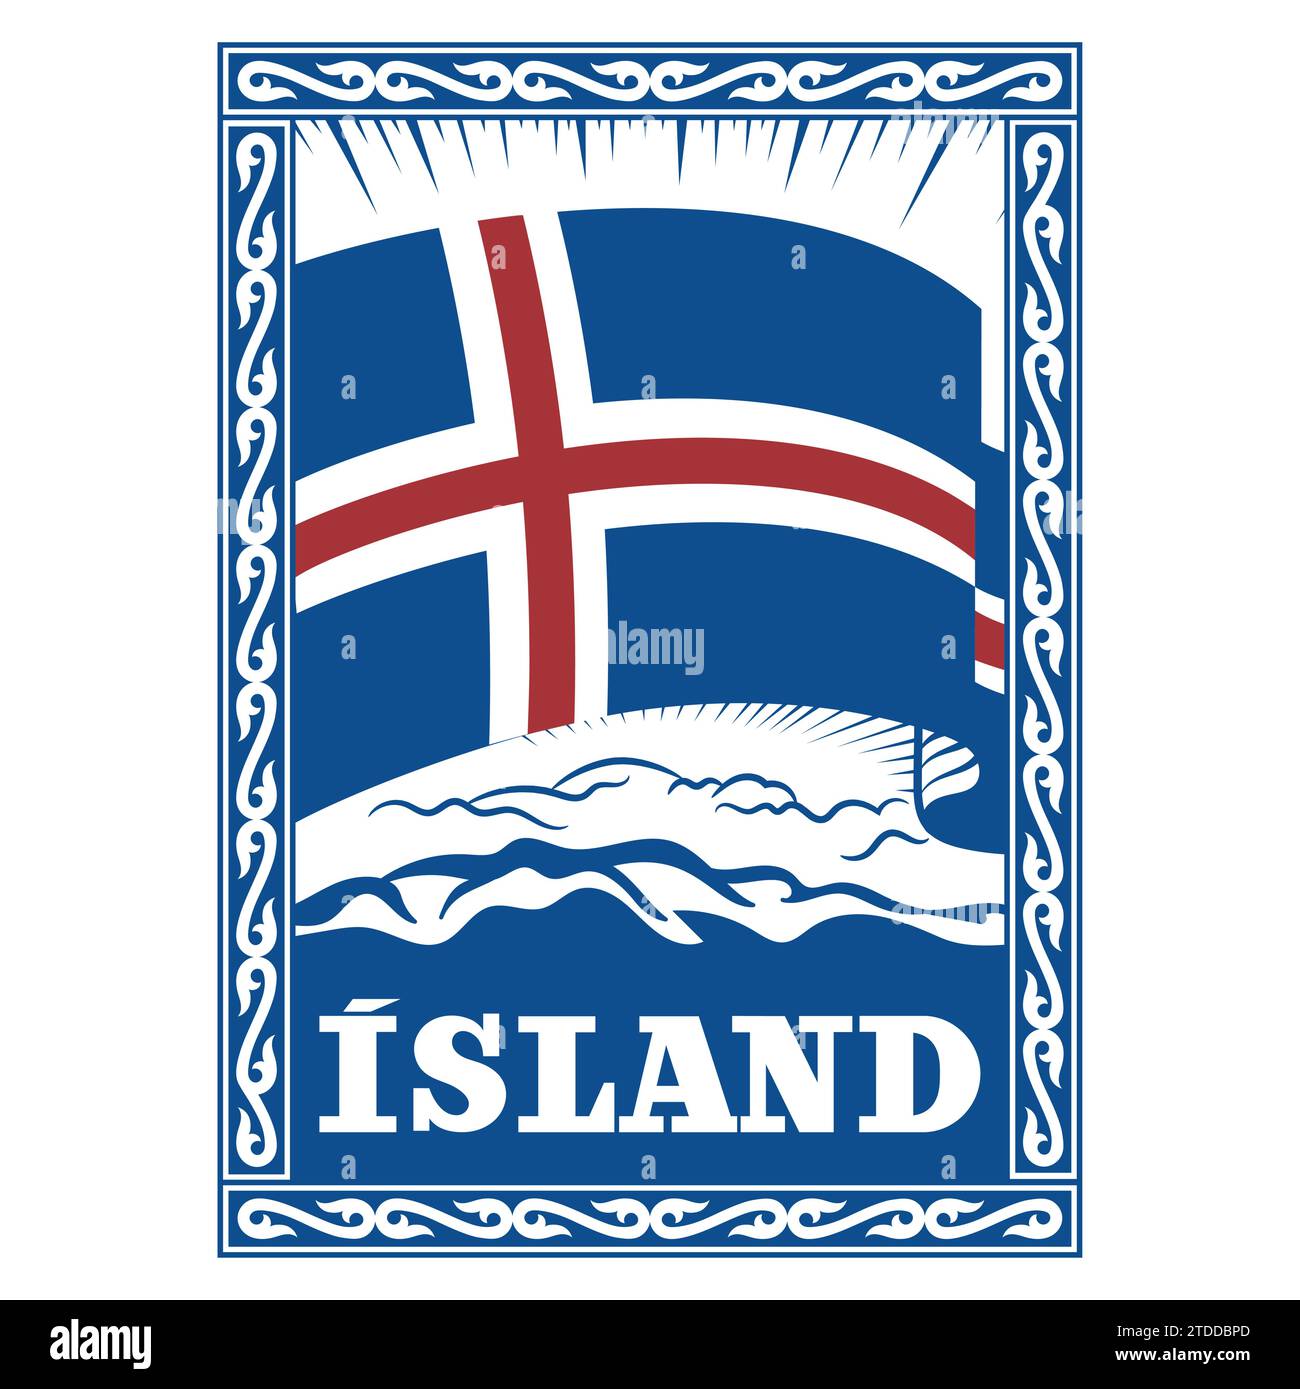 Design in stile vichingo. Bandiera islandese d'epoca incorniciata in un antico modello celtico scandinavo e con l'iscrizione Islanda Illustrazione Vettoriale